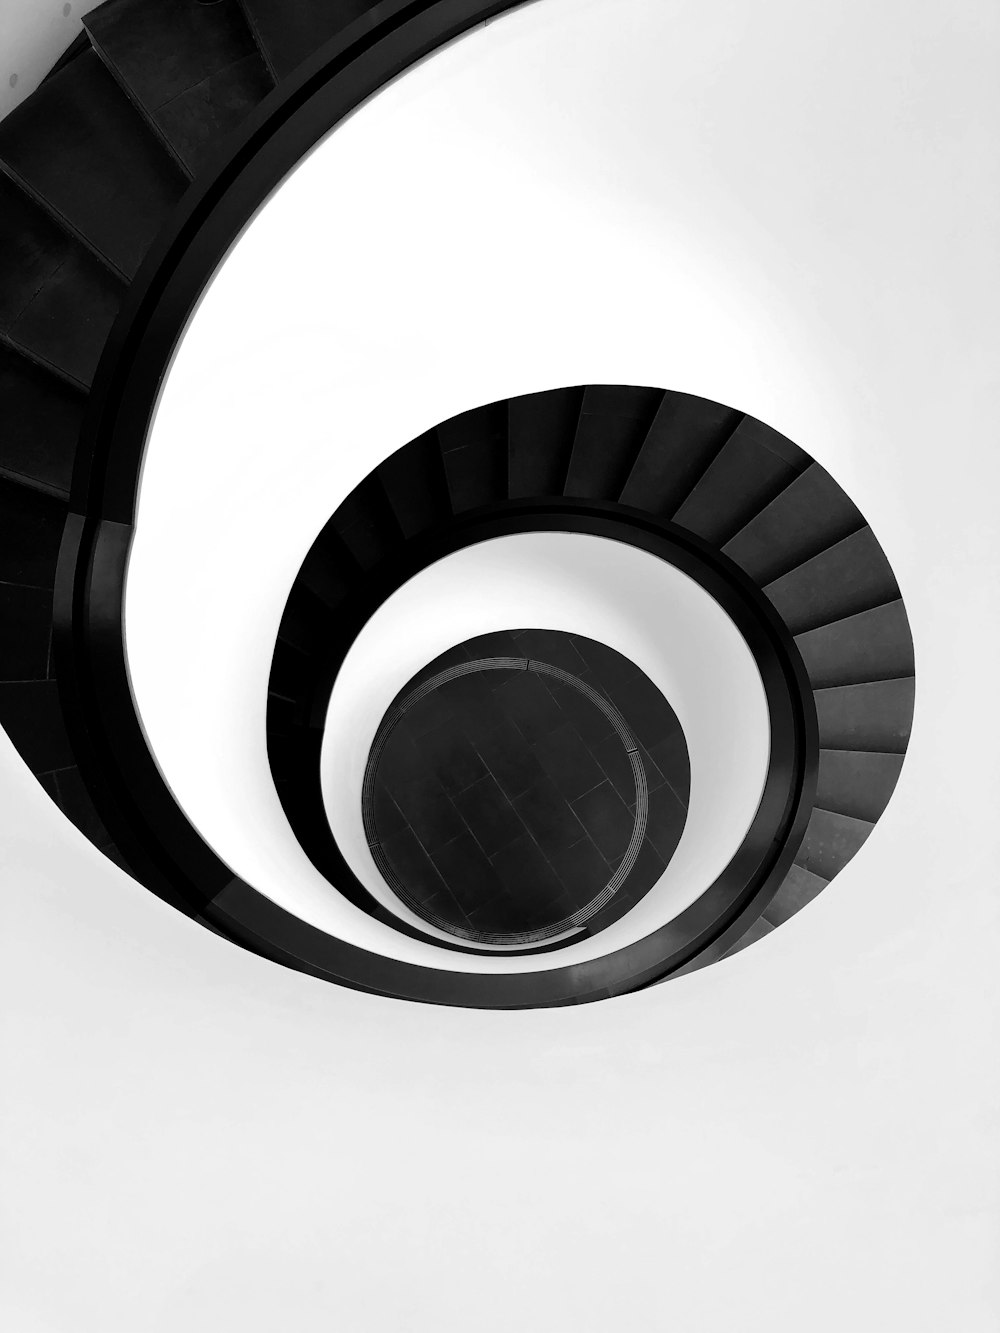 spiral stairway illustration